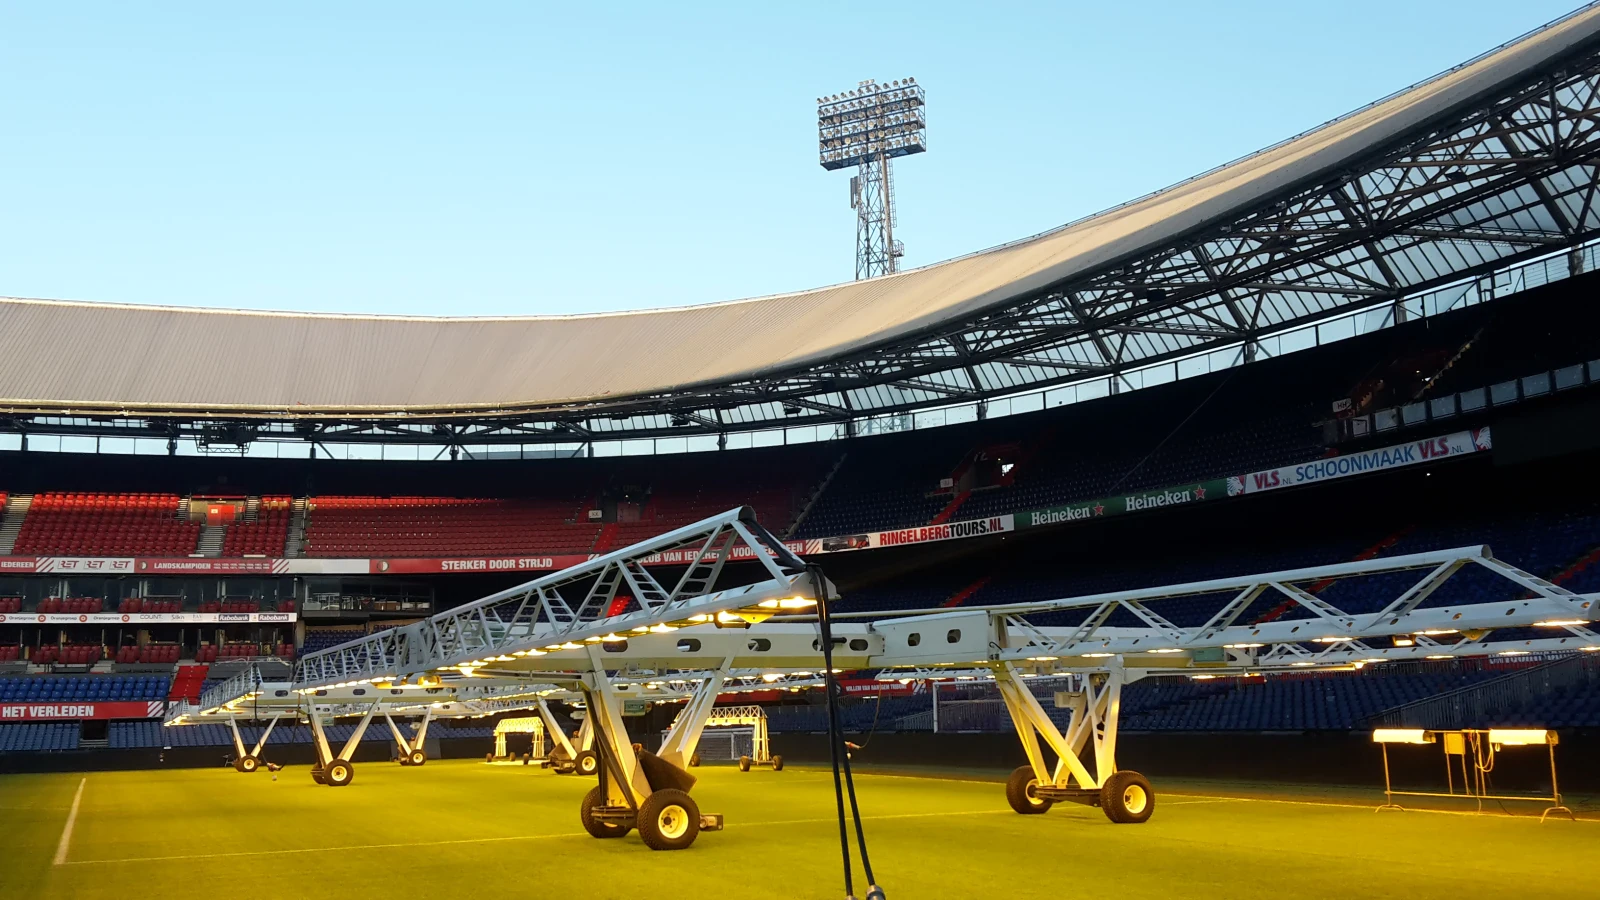 Veldencompetitie voor de achtste keer op rij gewonnen door Feyenoord